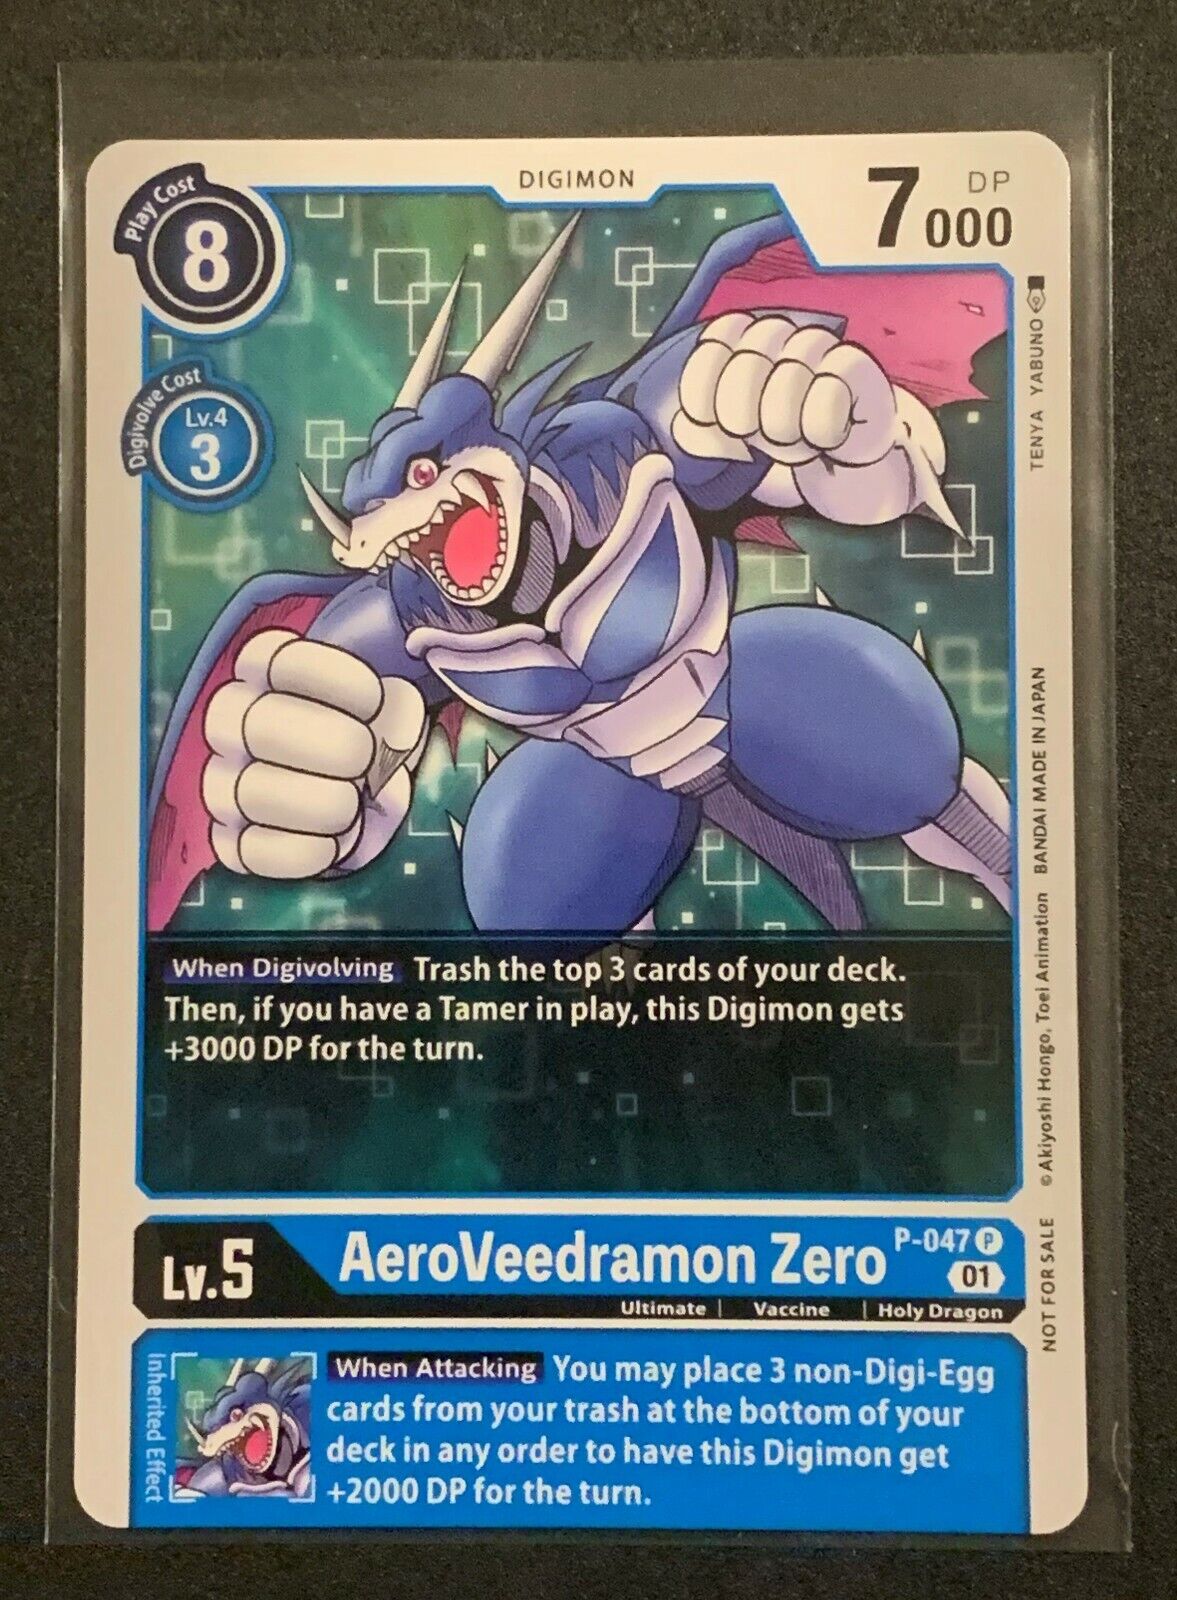 AeroVeedramon Zero (Box Topper) | P-047 P | Blue | New Awakening | Digimon